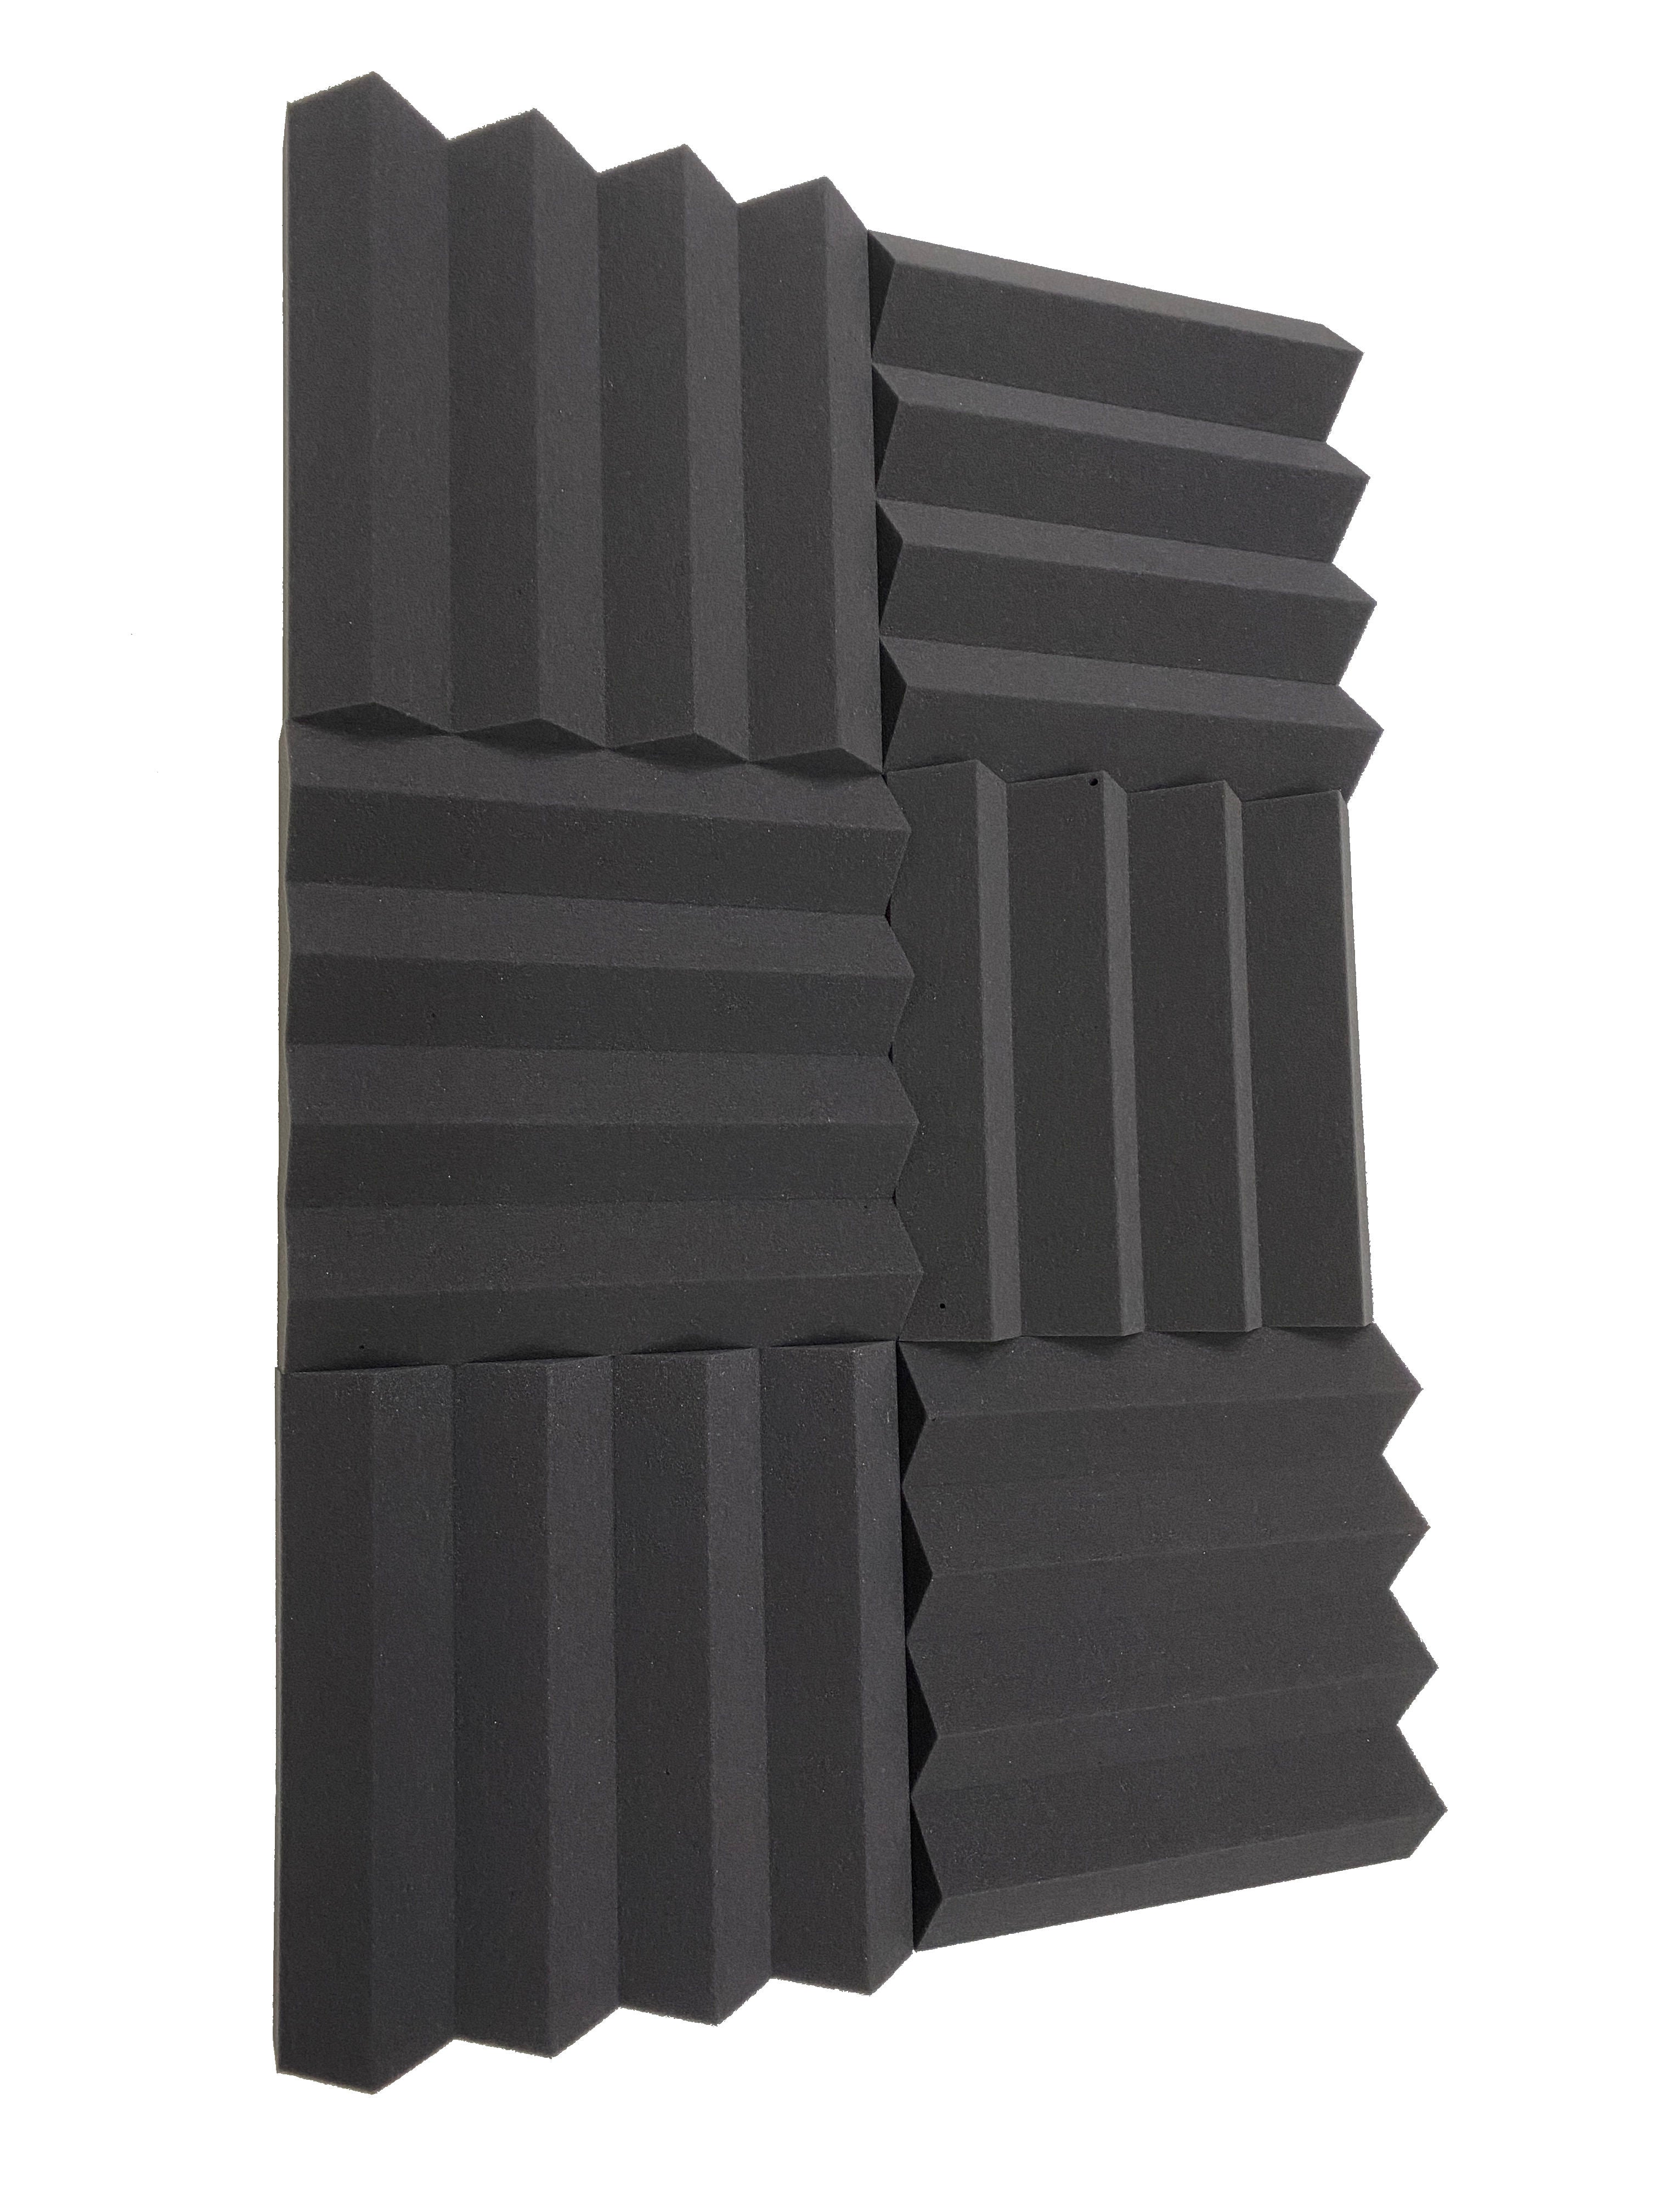 Kaufen dunkelgrau Wedge PRO 12&quot; Acoustic Studio Foam Tile Pack - 24 Tiles, 2.2qm Coverage